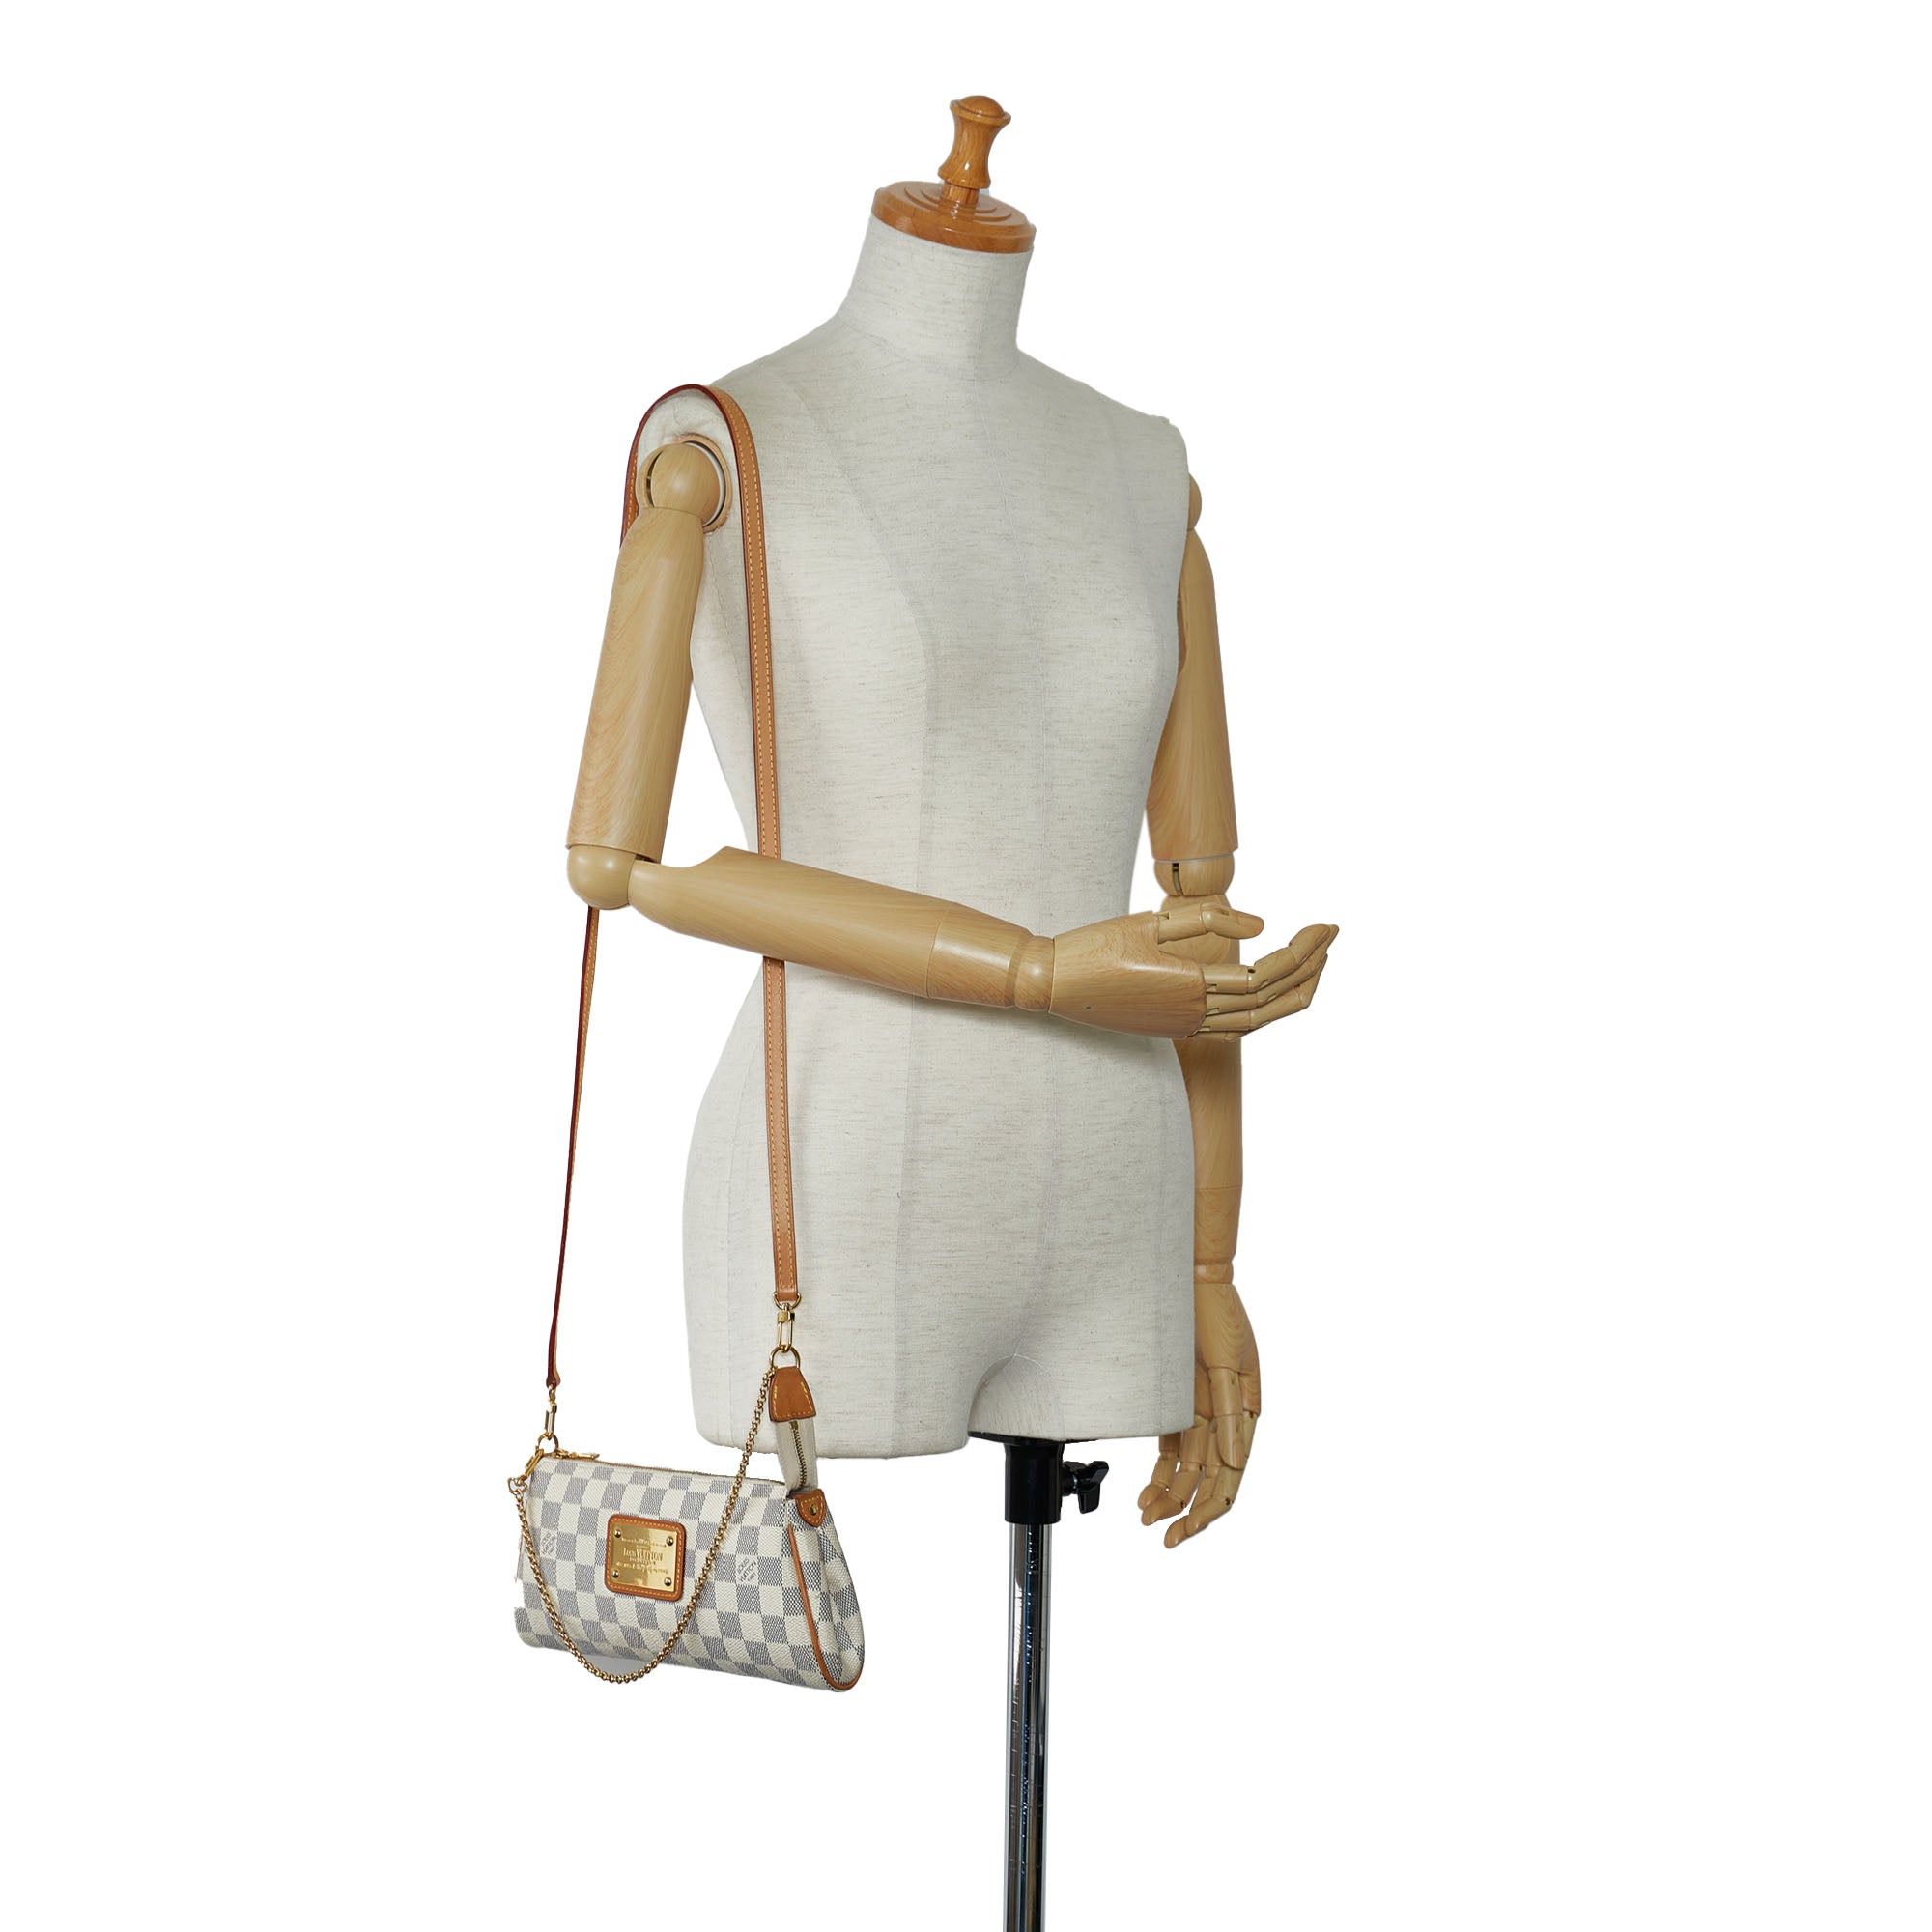 Louis Vuitton Eva Crossbody Bag